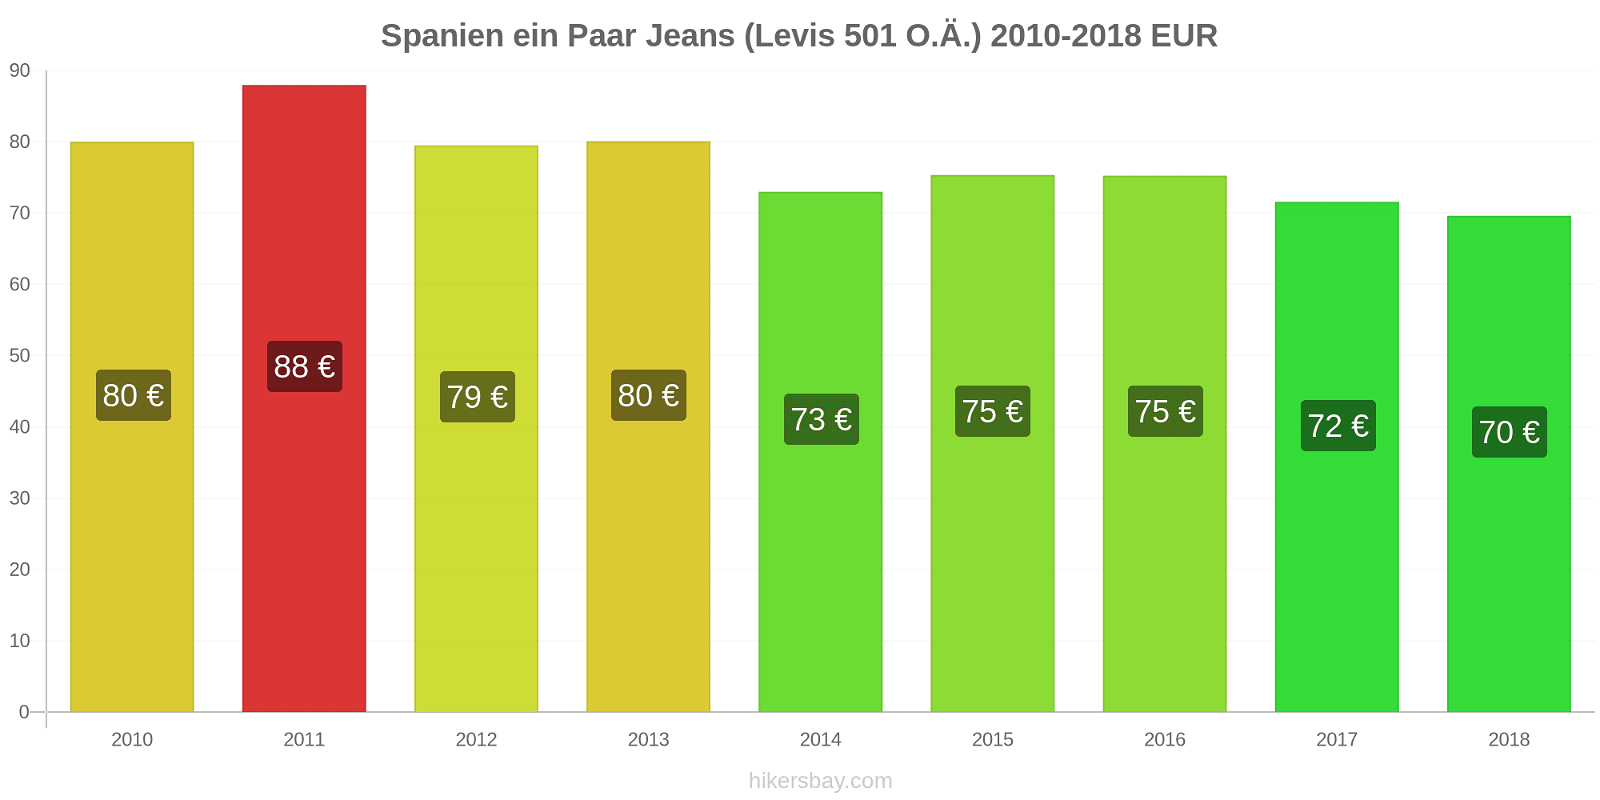 Spanien Preisänderungen 1 Paar Jeans (Levis 501 oder ähnlich) hikersbay.com